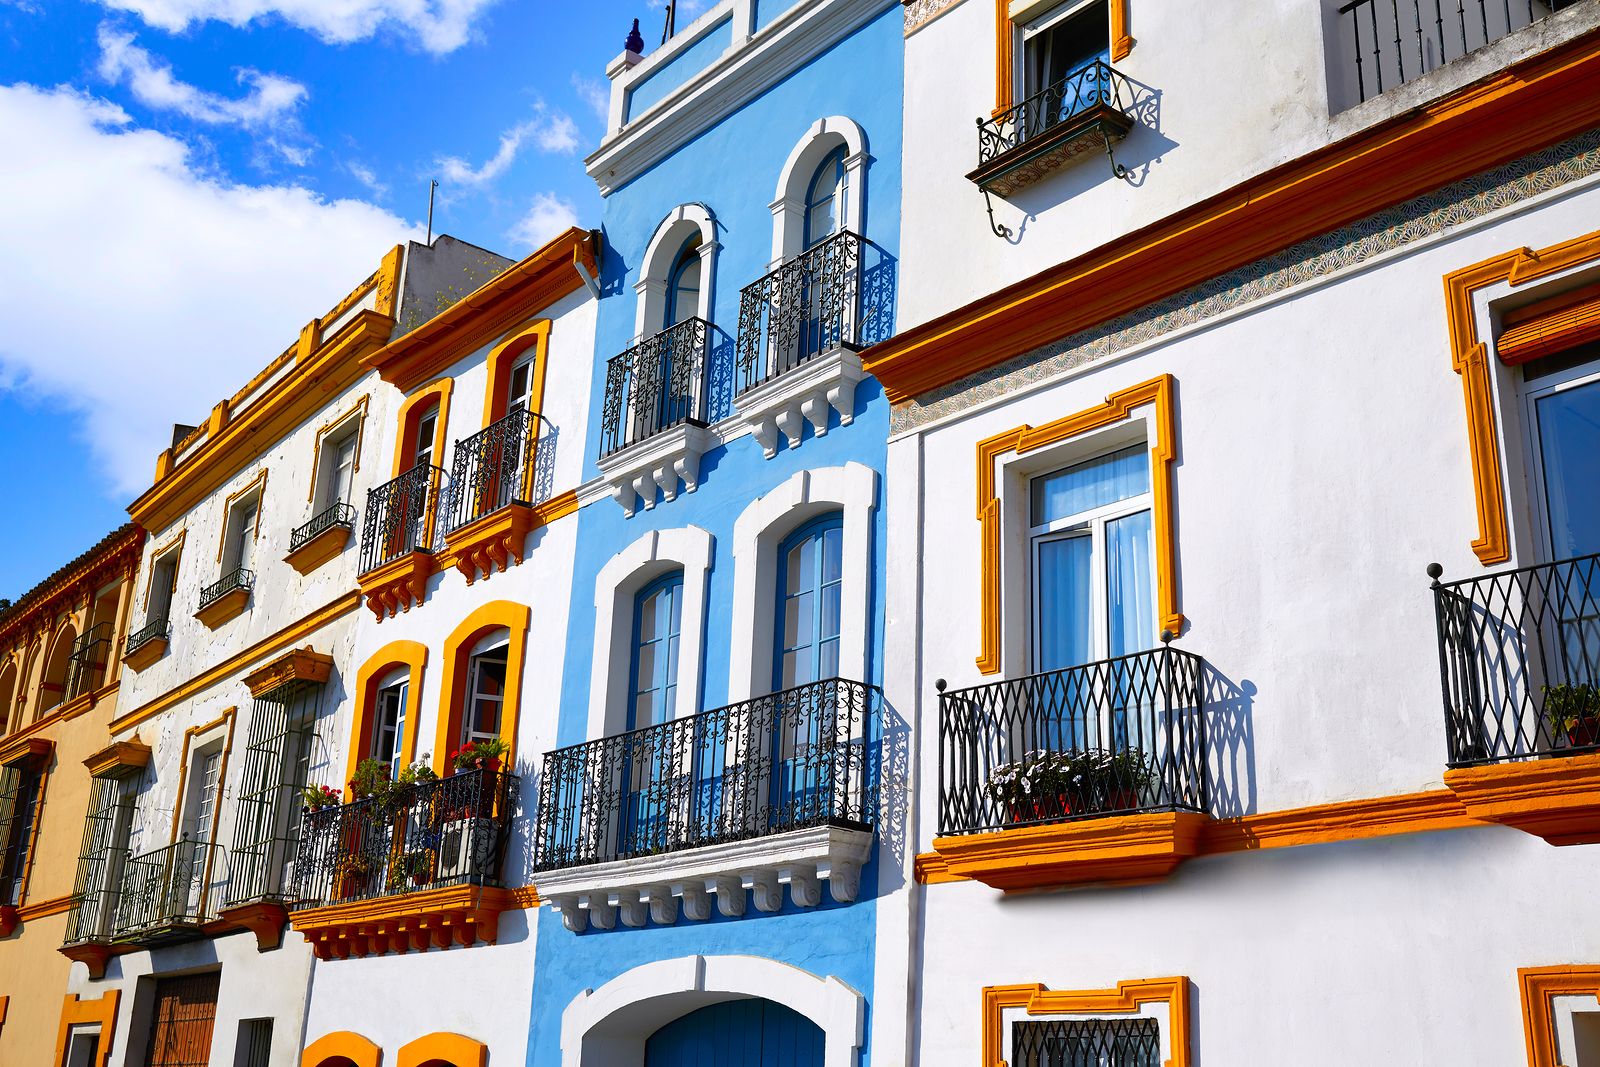 Descubre los pueblos y barrios con más color de España: Triana